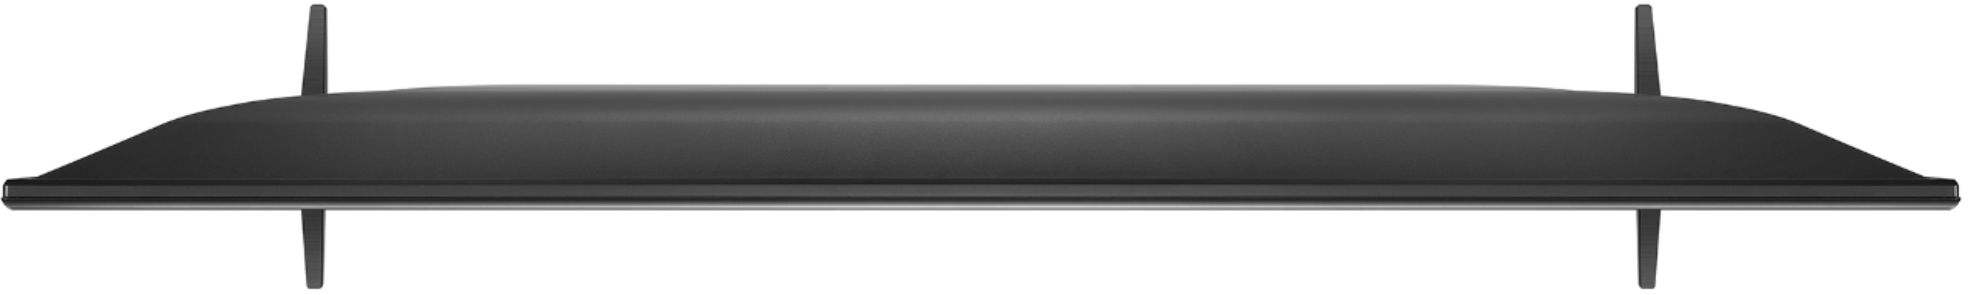 LG 60UM6900 - Paquete de TV LED inteligente HDR 4K UHD de 60 pulgadas con  sonido envolvente Deco Gear Home Theater Barra de sonido de 31 pulgadas y  cable óptico Toslink de 0.197 in OD de 6 pies : Electrónica 